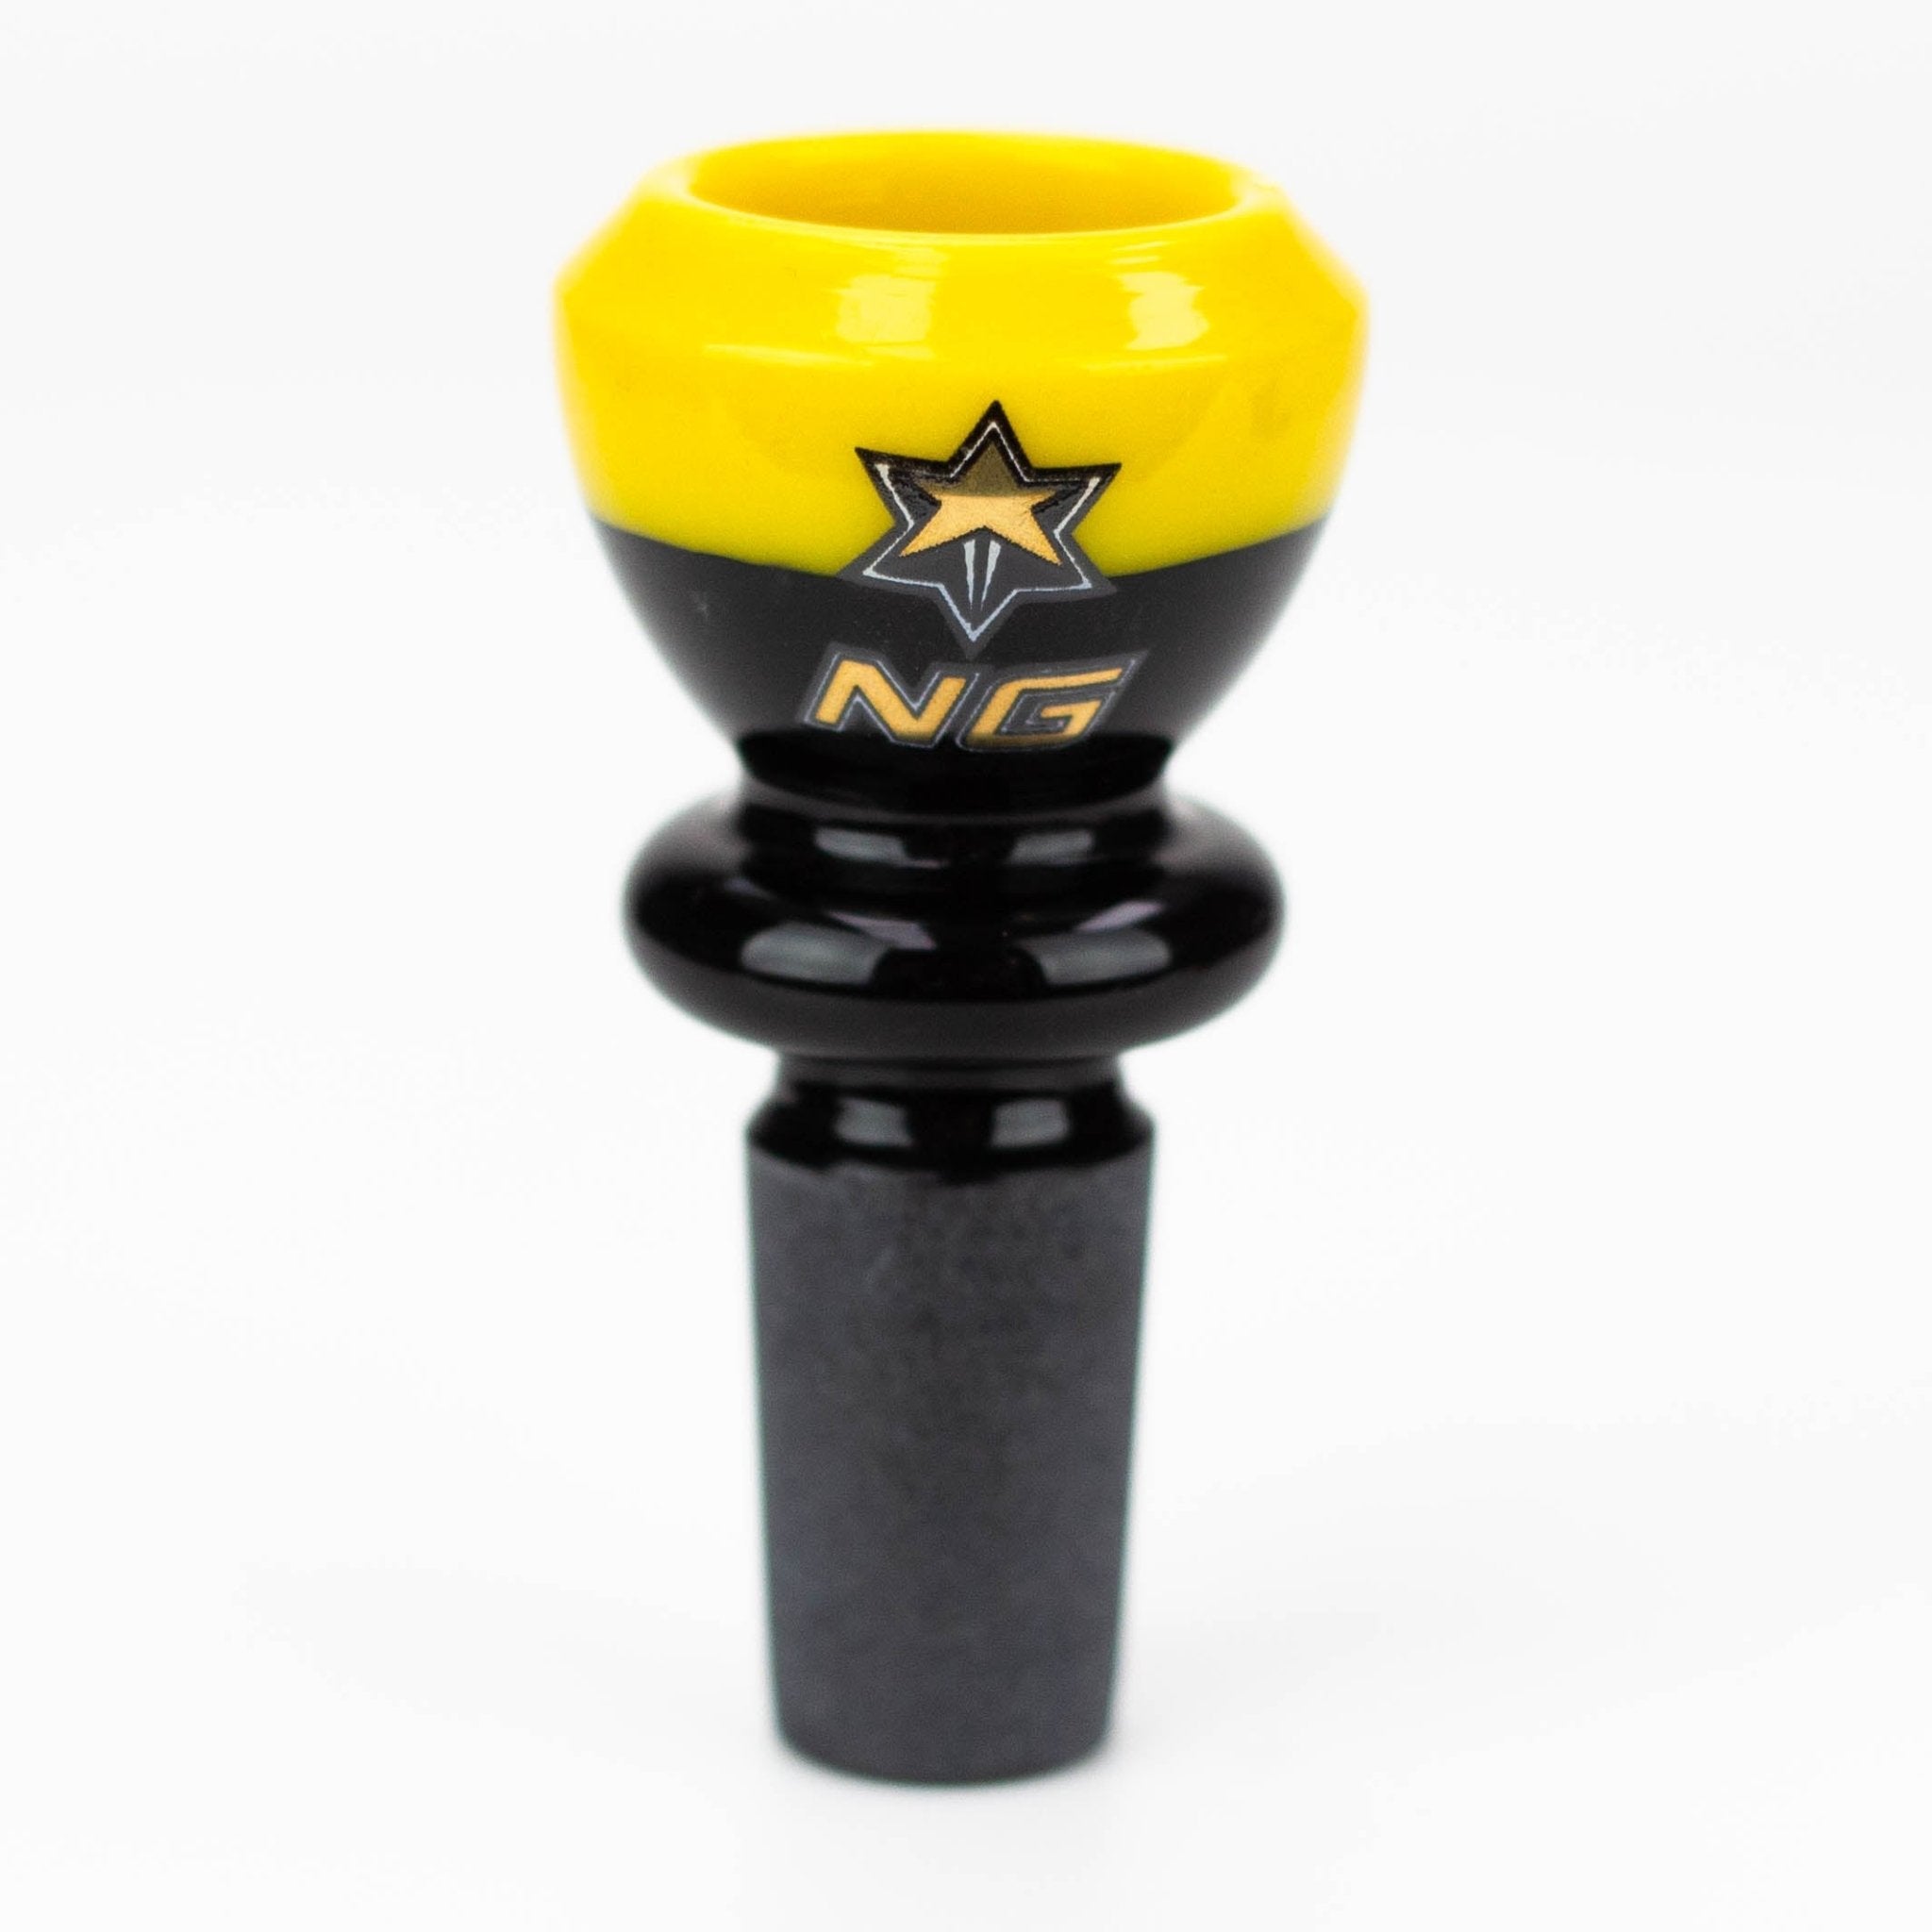 NG - Black & Color Cup Bowl - Glasss Station